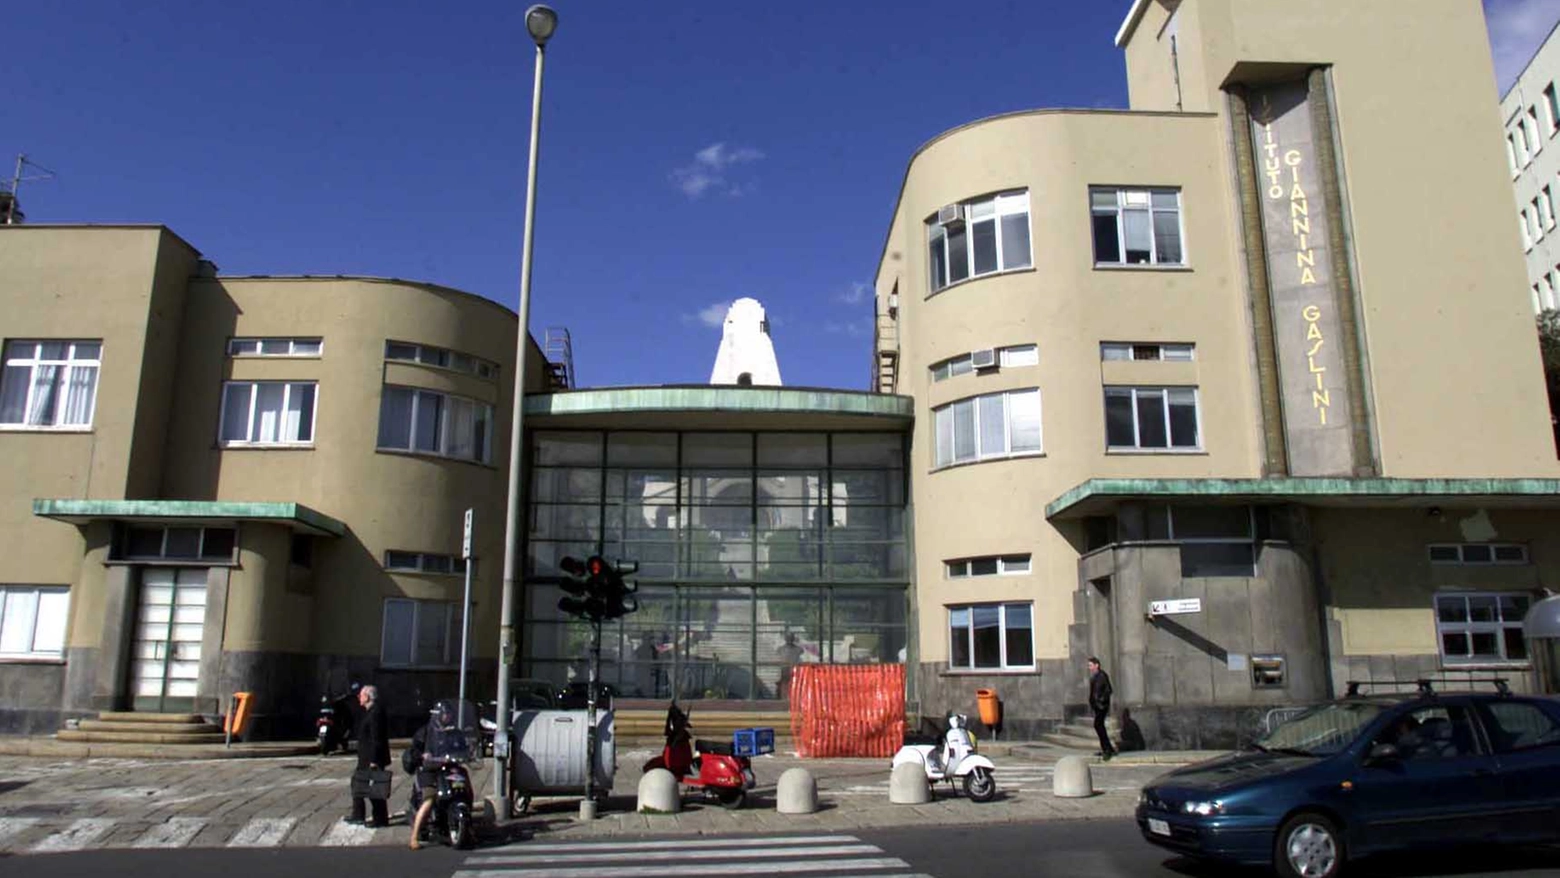 L'ospedale pediatrico "Giannina Gaslini" di Genova (Frascatore)